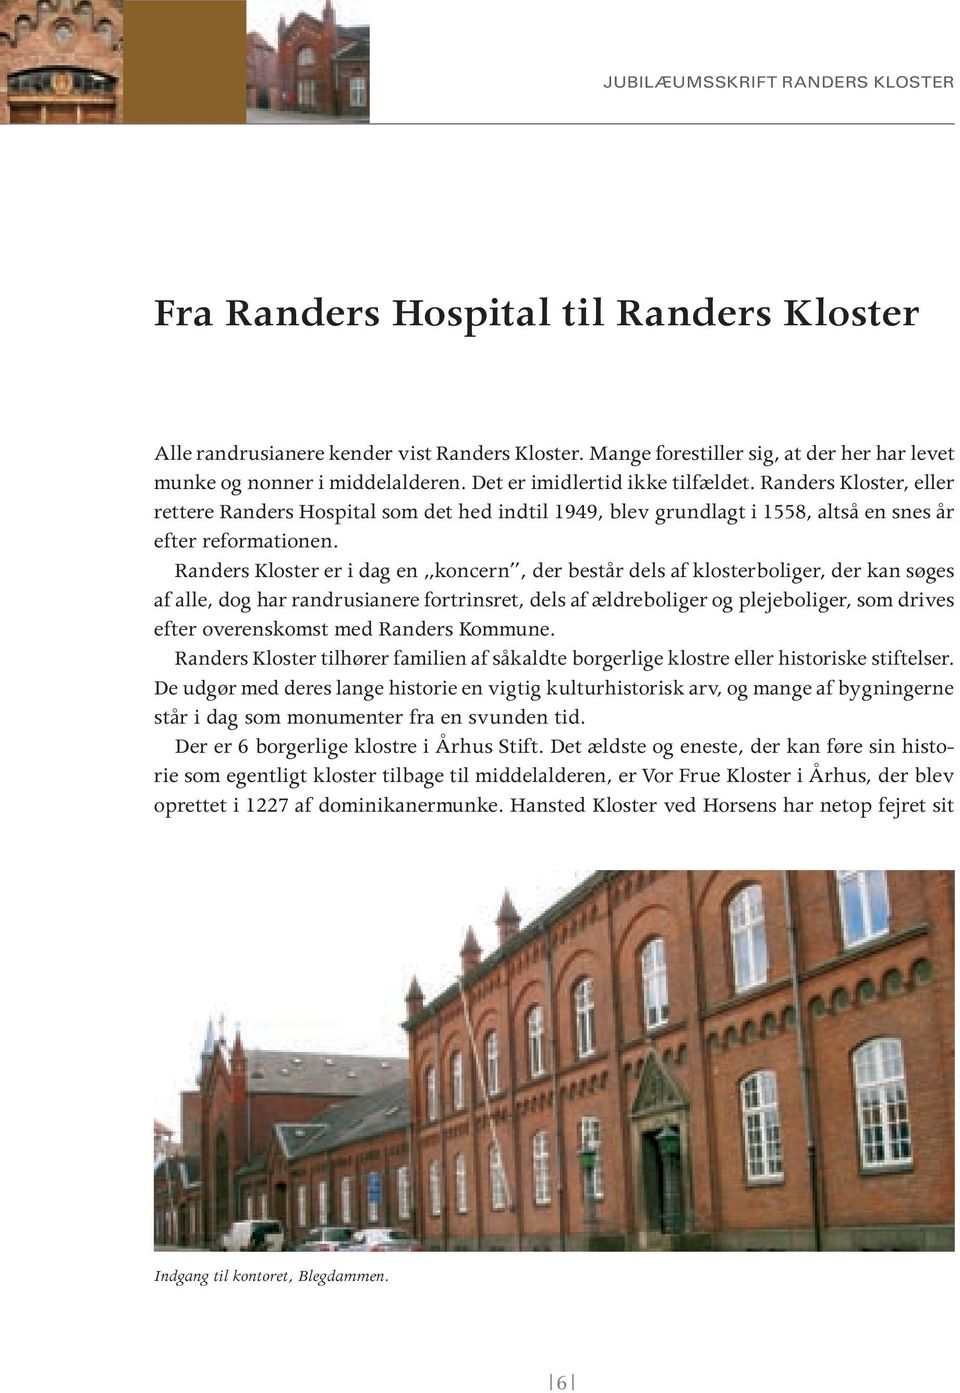 Randers Kloster er i dag en koncern, der består dels af klosterboliger, der kan søges af alle, dog har randrusianere fortrinsret, dels af ældreboliger og plejeboliger, som drives efter overenskomst